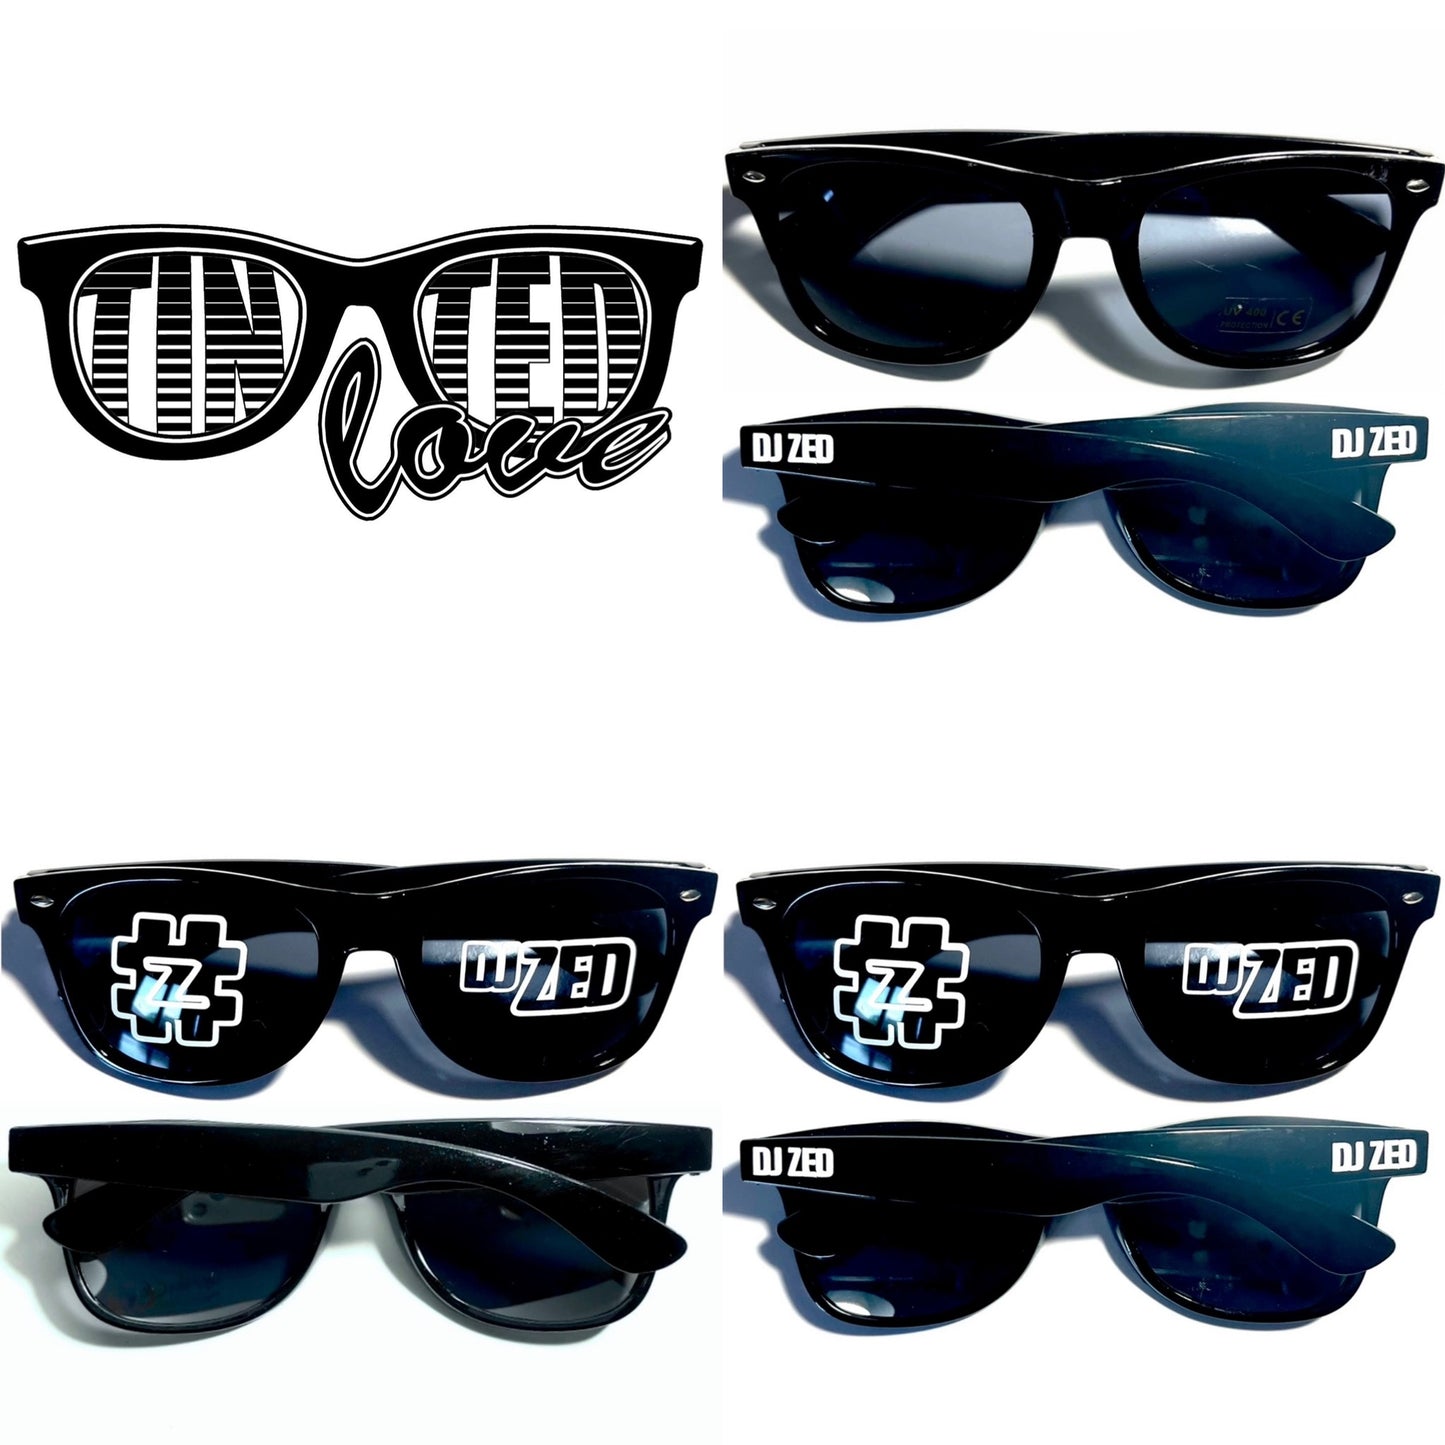 DJ Zed Sunglasses